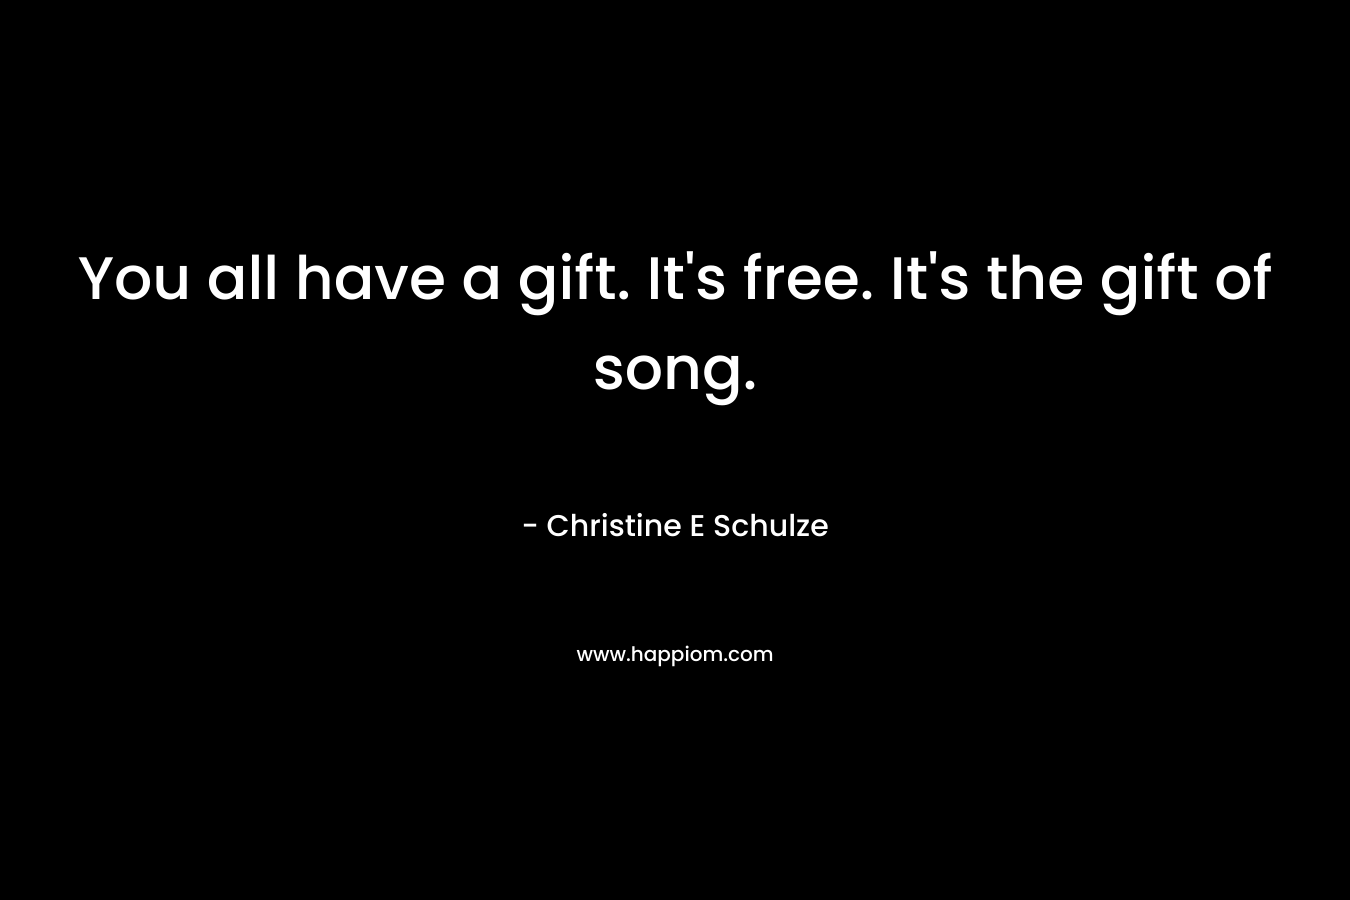 You all have a gift. It's free. It's the gift of song.